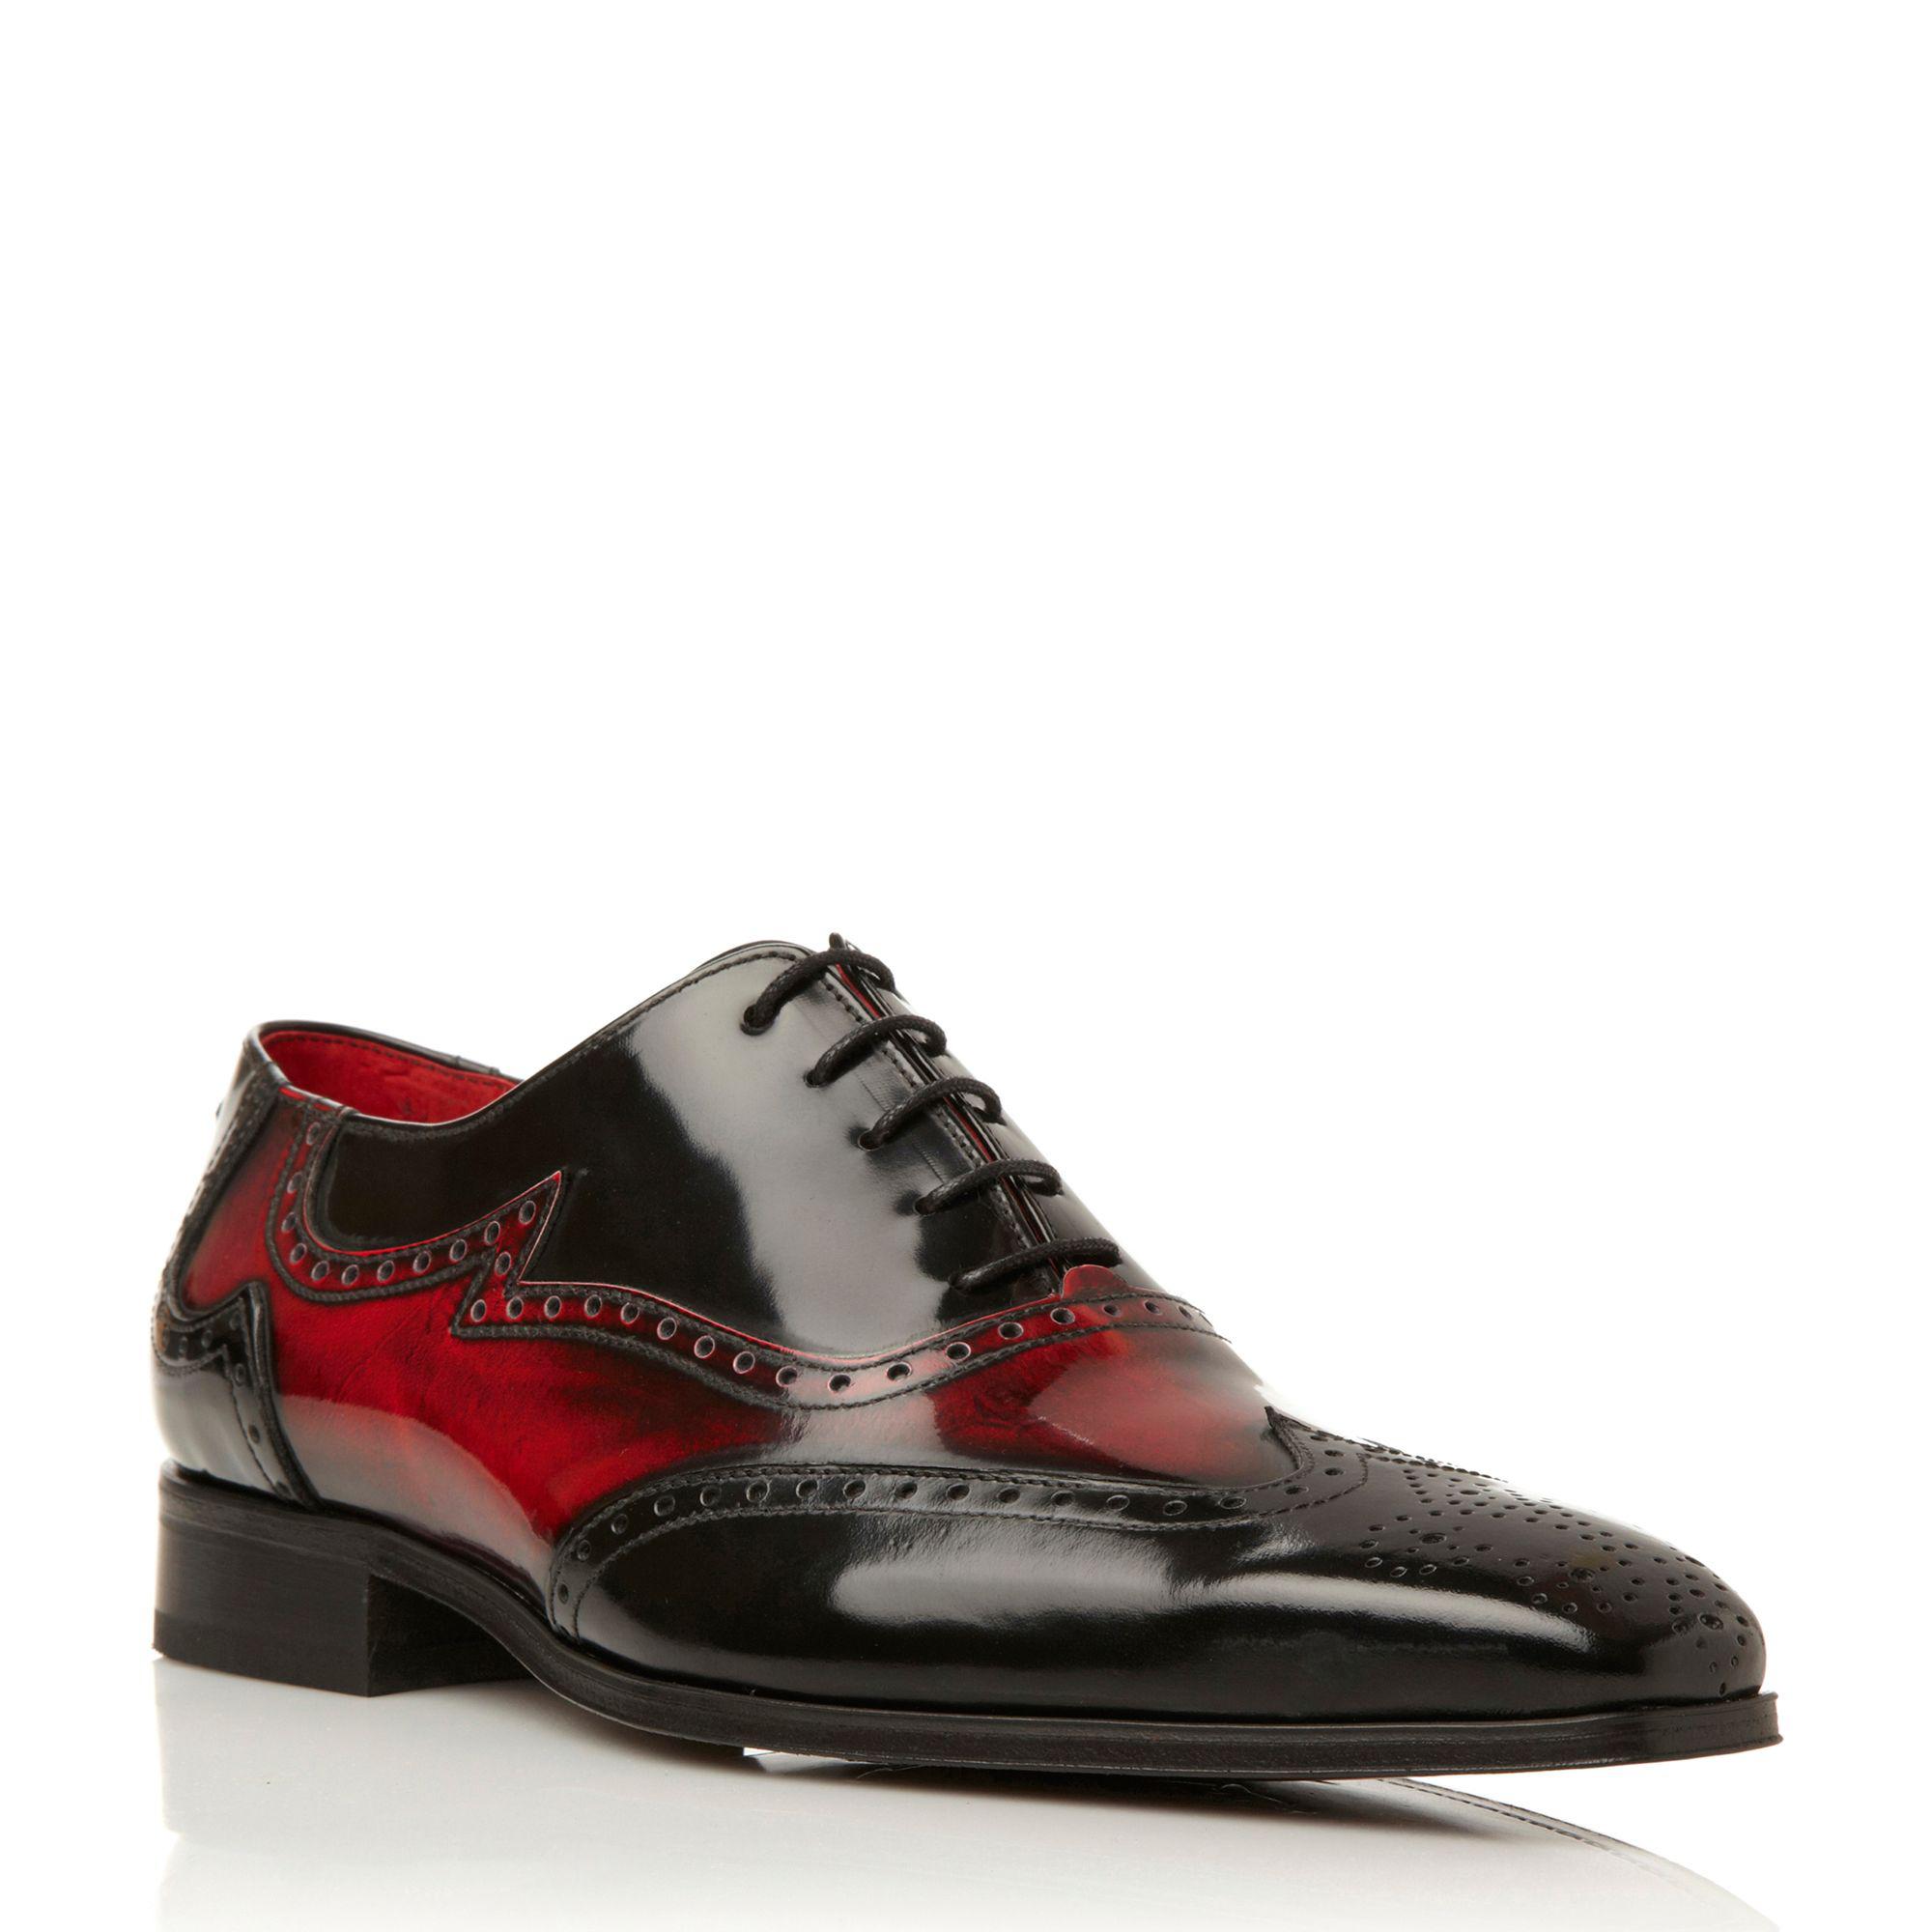 Jeffery West J637 Contrast Detail Oxford Shoes in Black for Men - Lyst